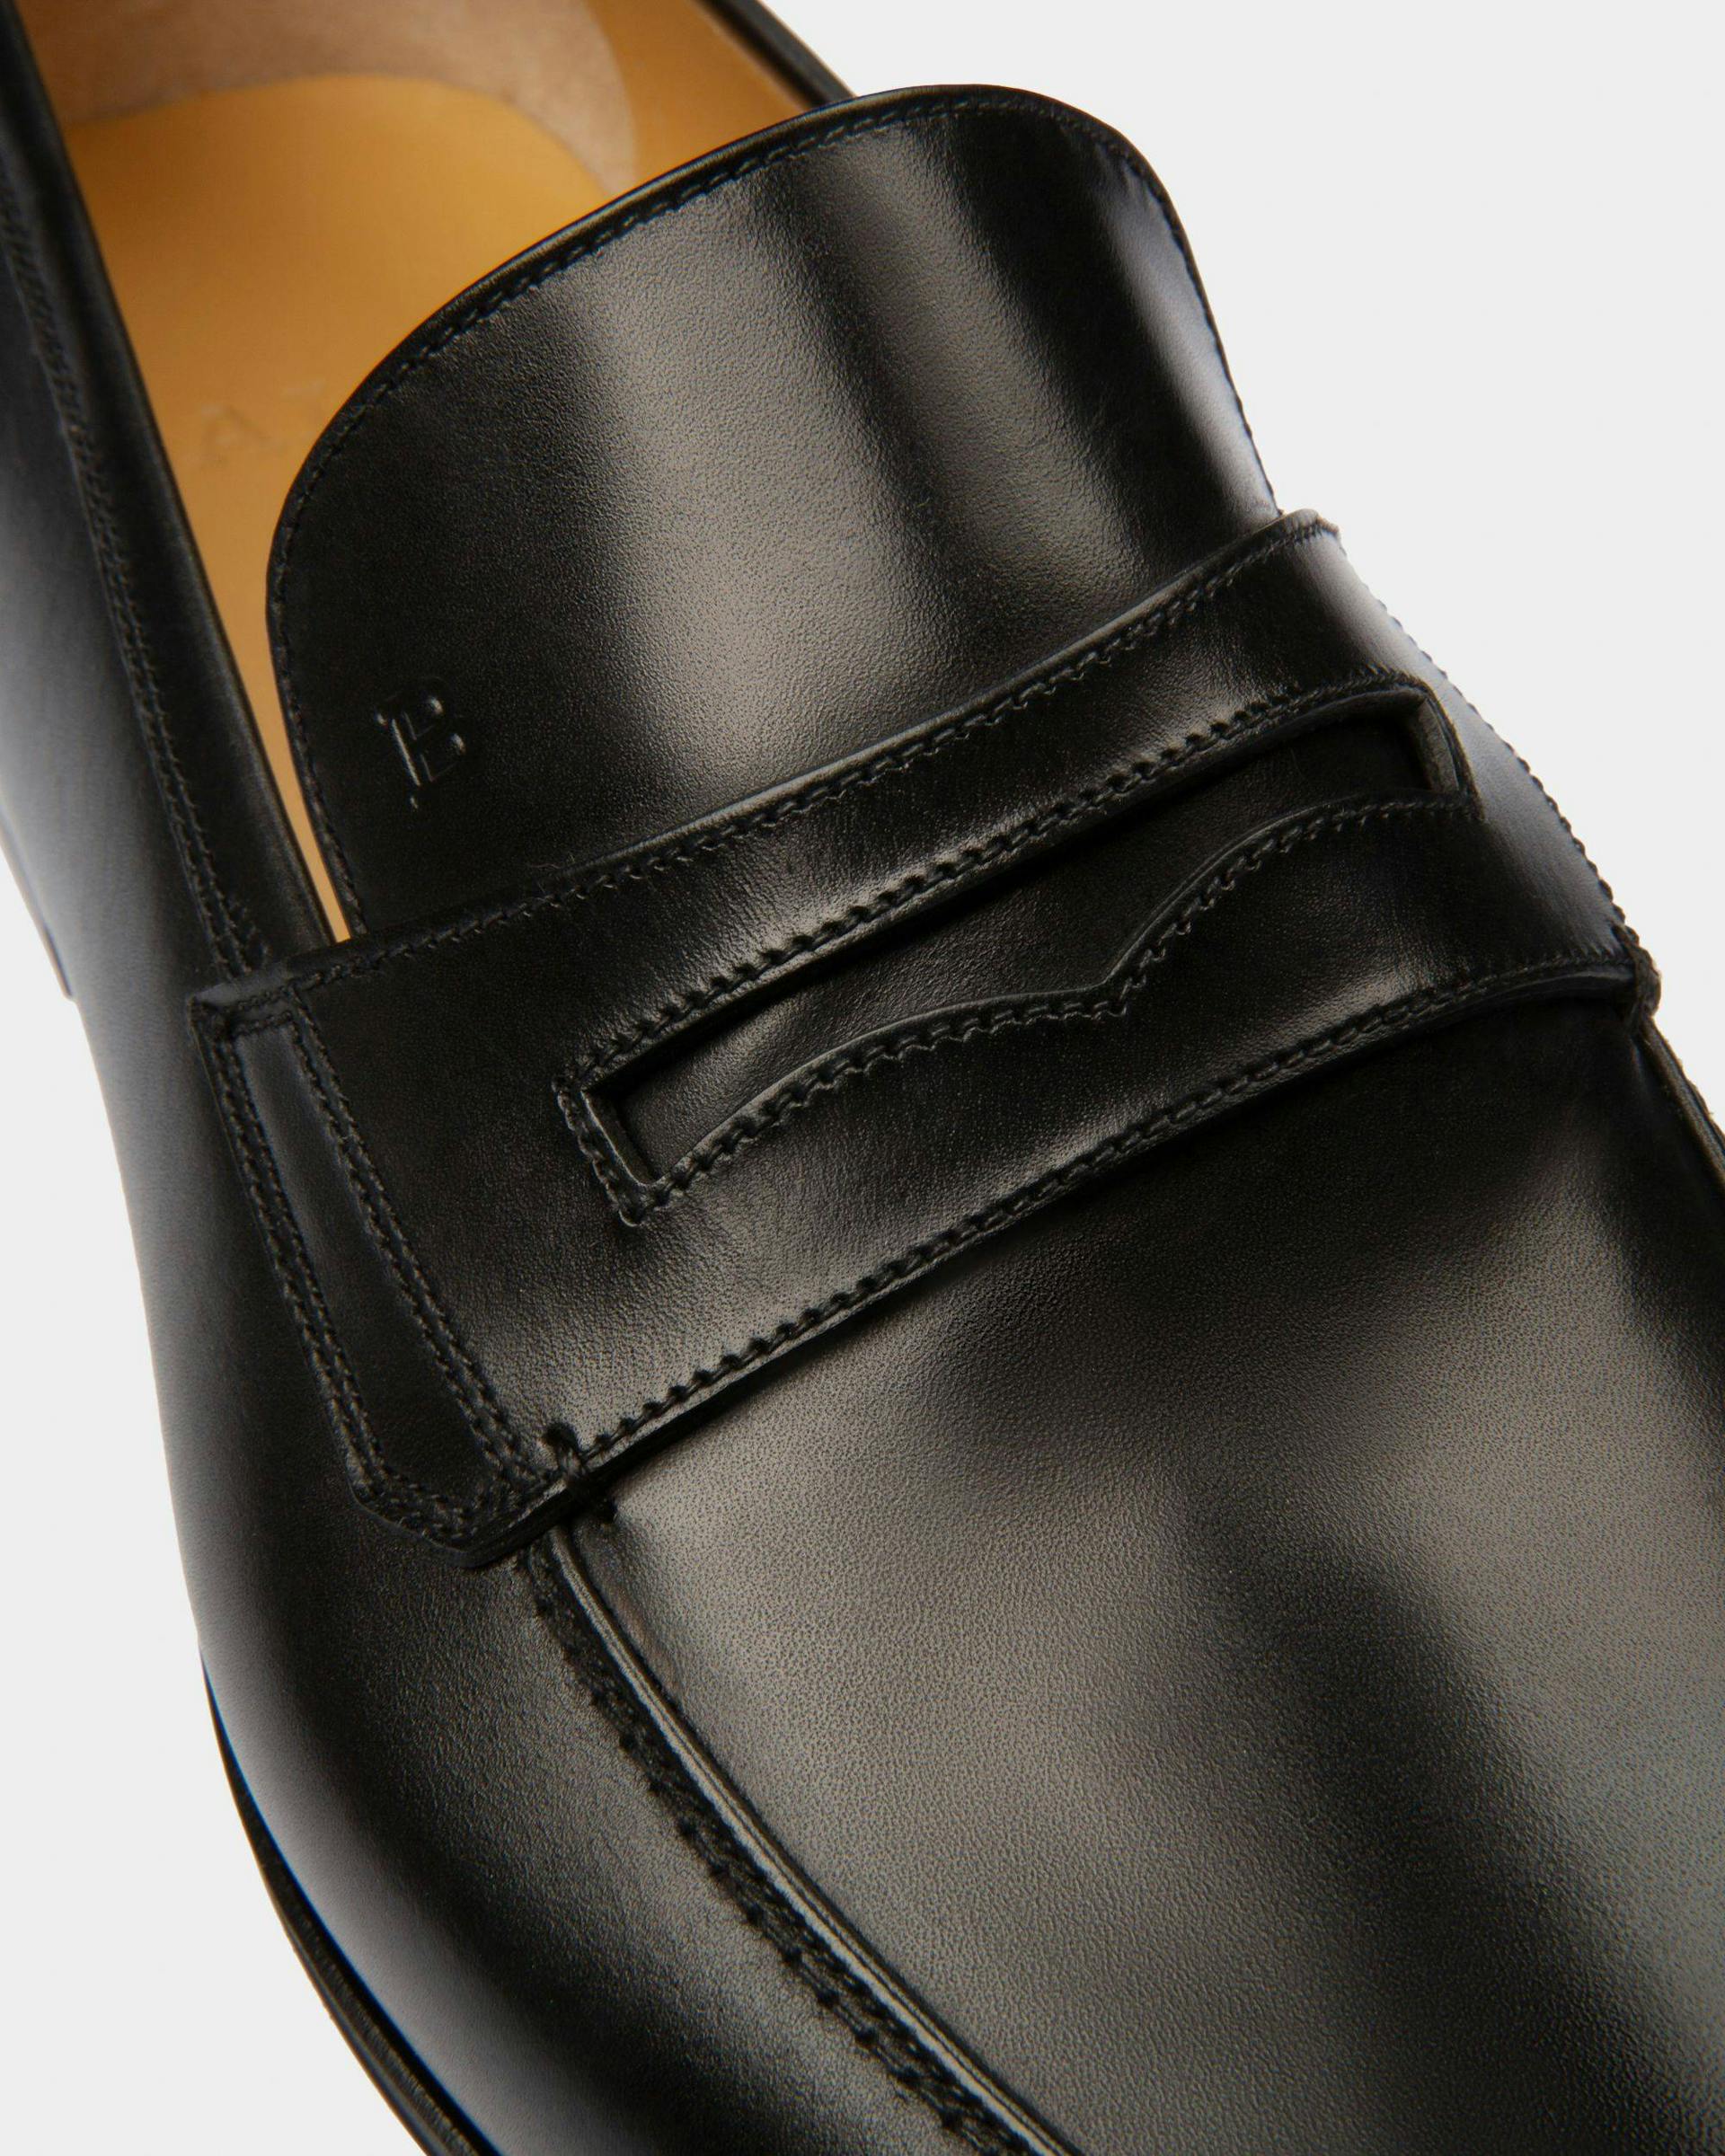 Webb Leather Loafers In Black - Herren - Bally - 05